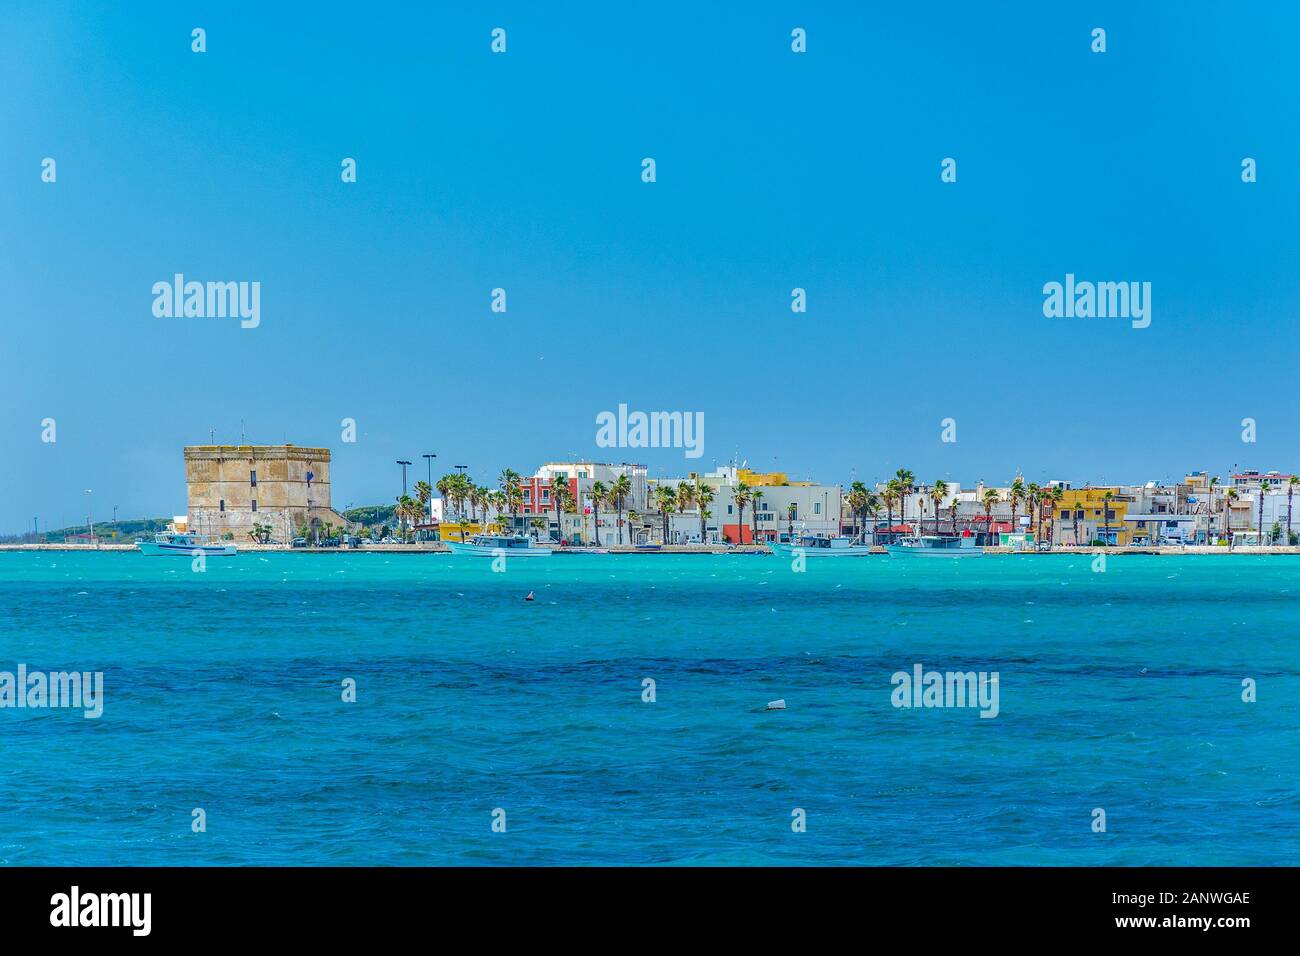 Porto Cesareo sea promenade and harbour near Lecce, Puglia, Italy by Mediterranean (Ionian) Sea Stock Photo